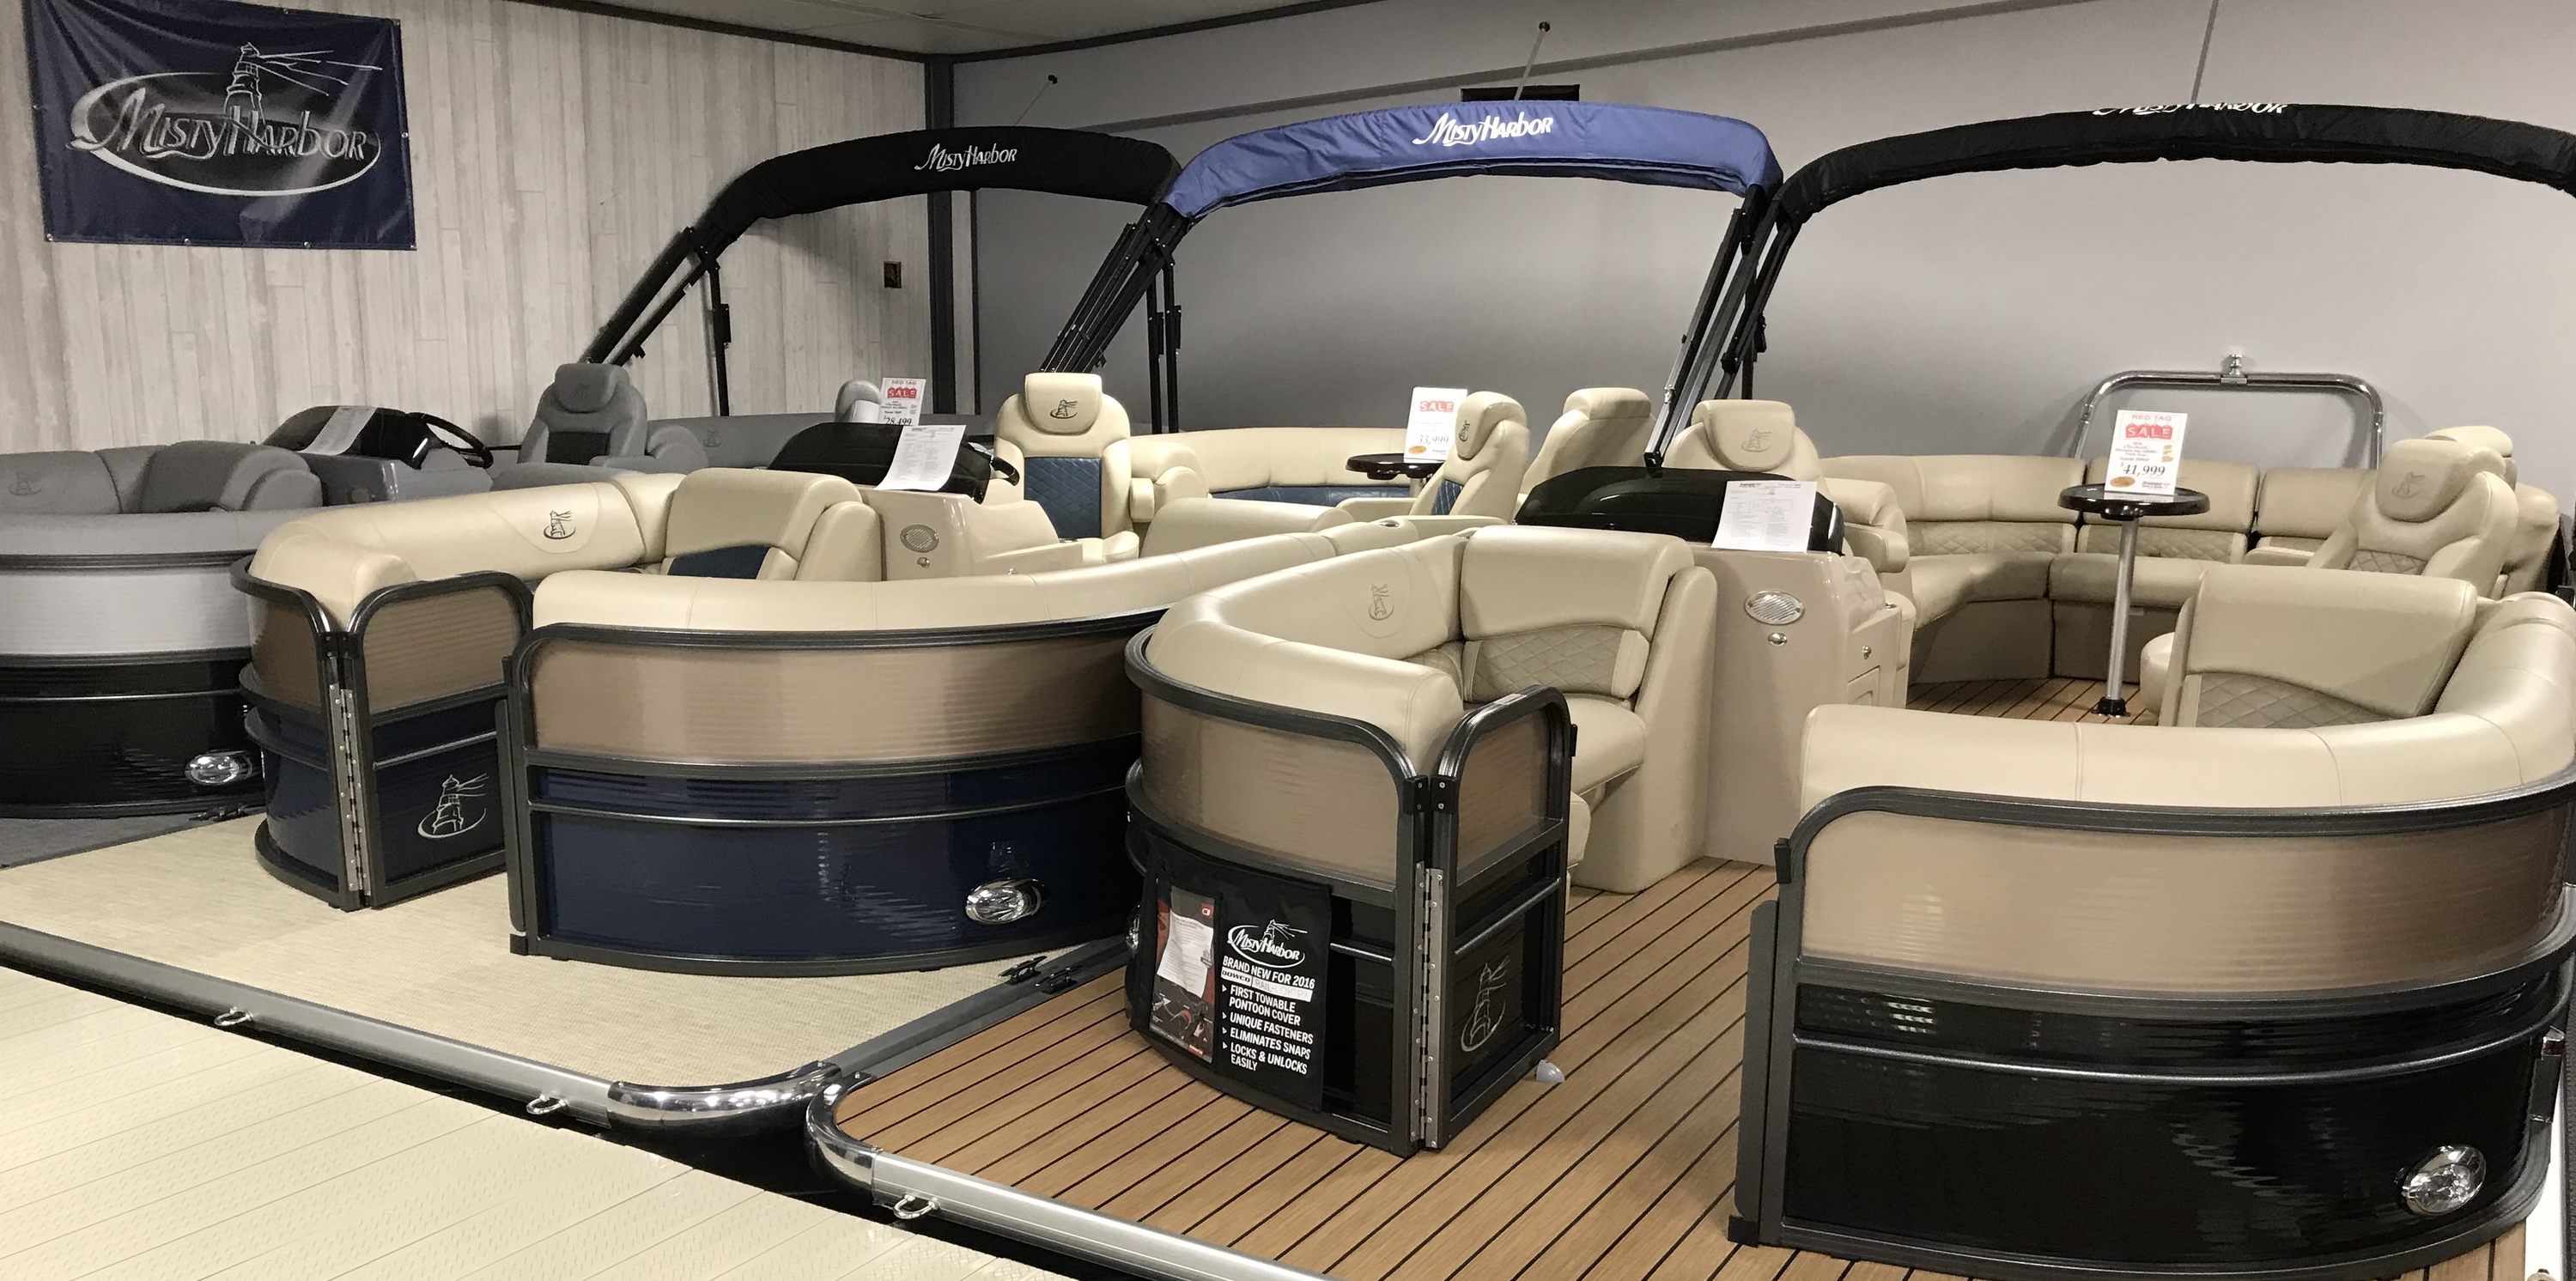 2018 Suzuki Outboard for sale in Brainerd Sports & Marine, Brainerd, Minnesota